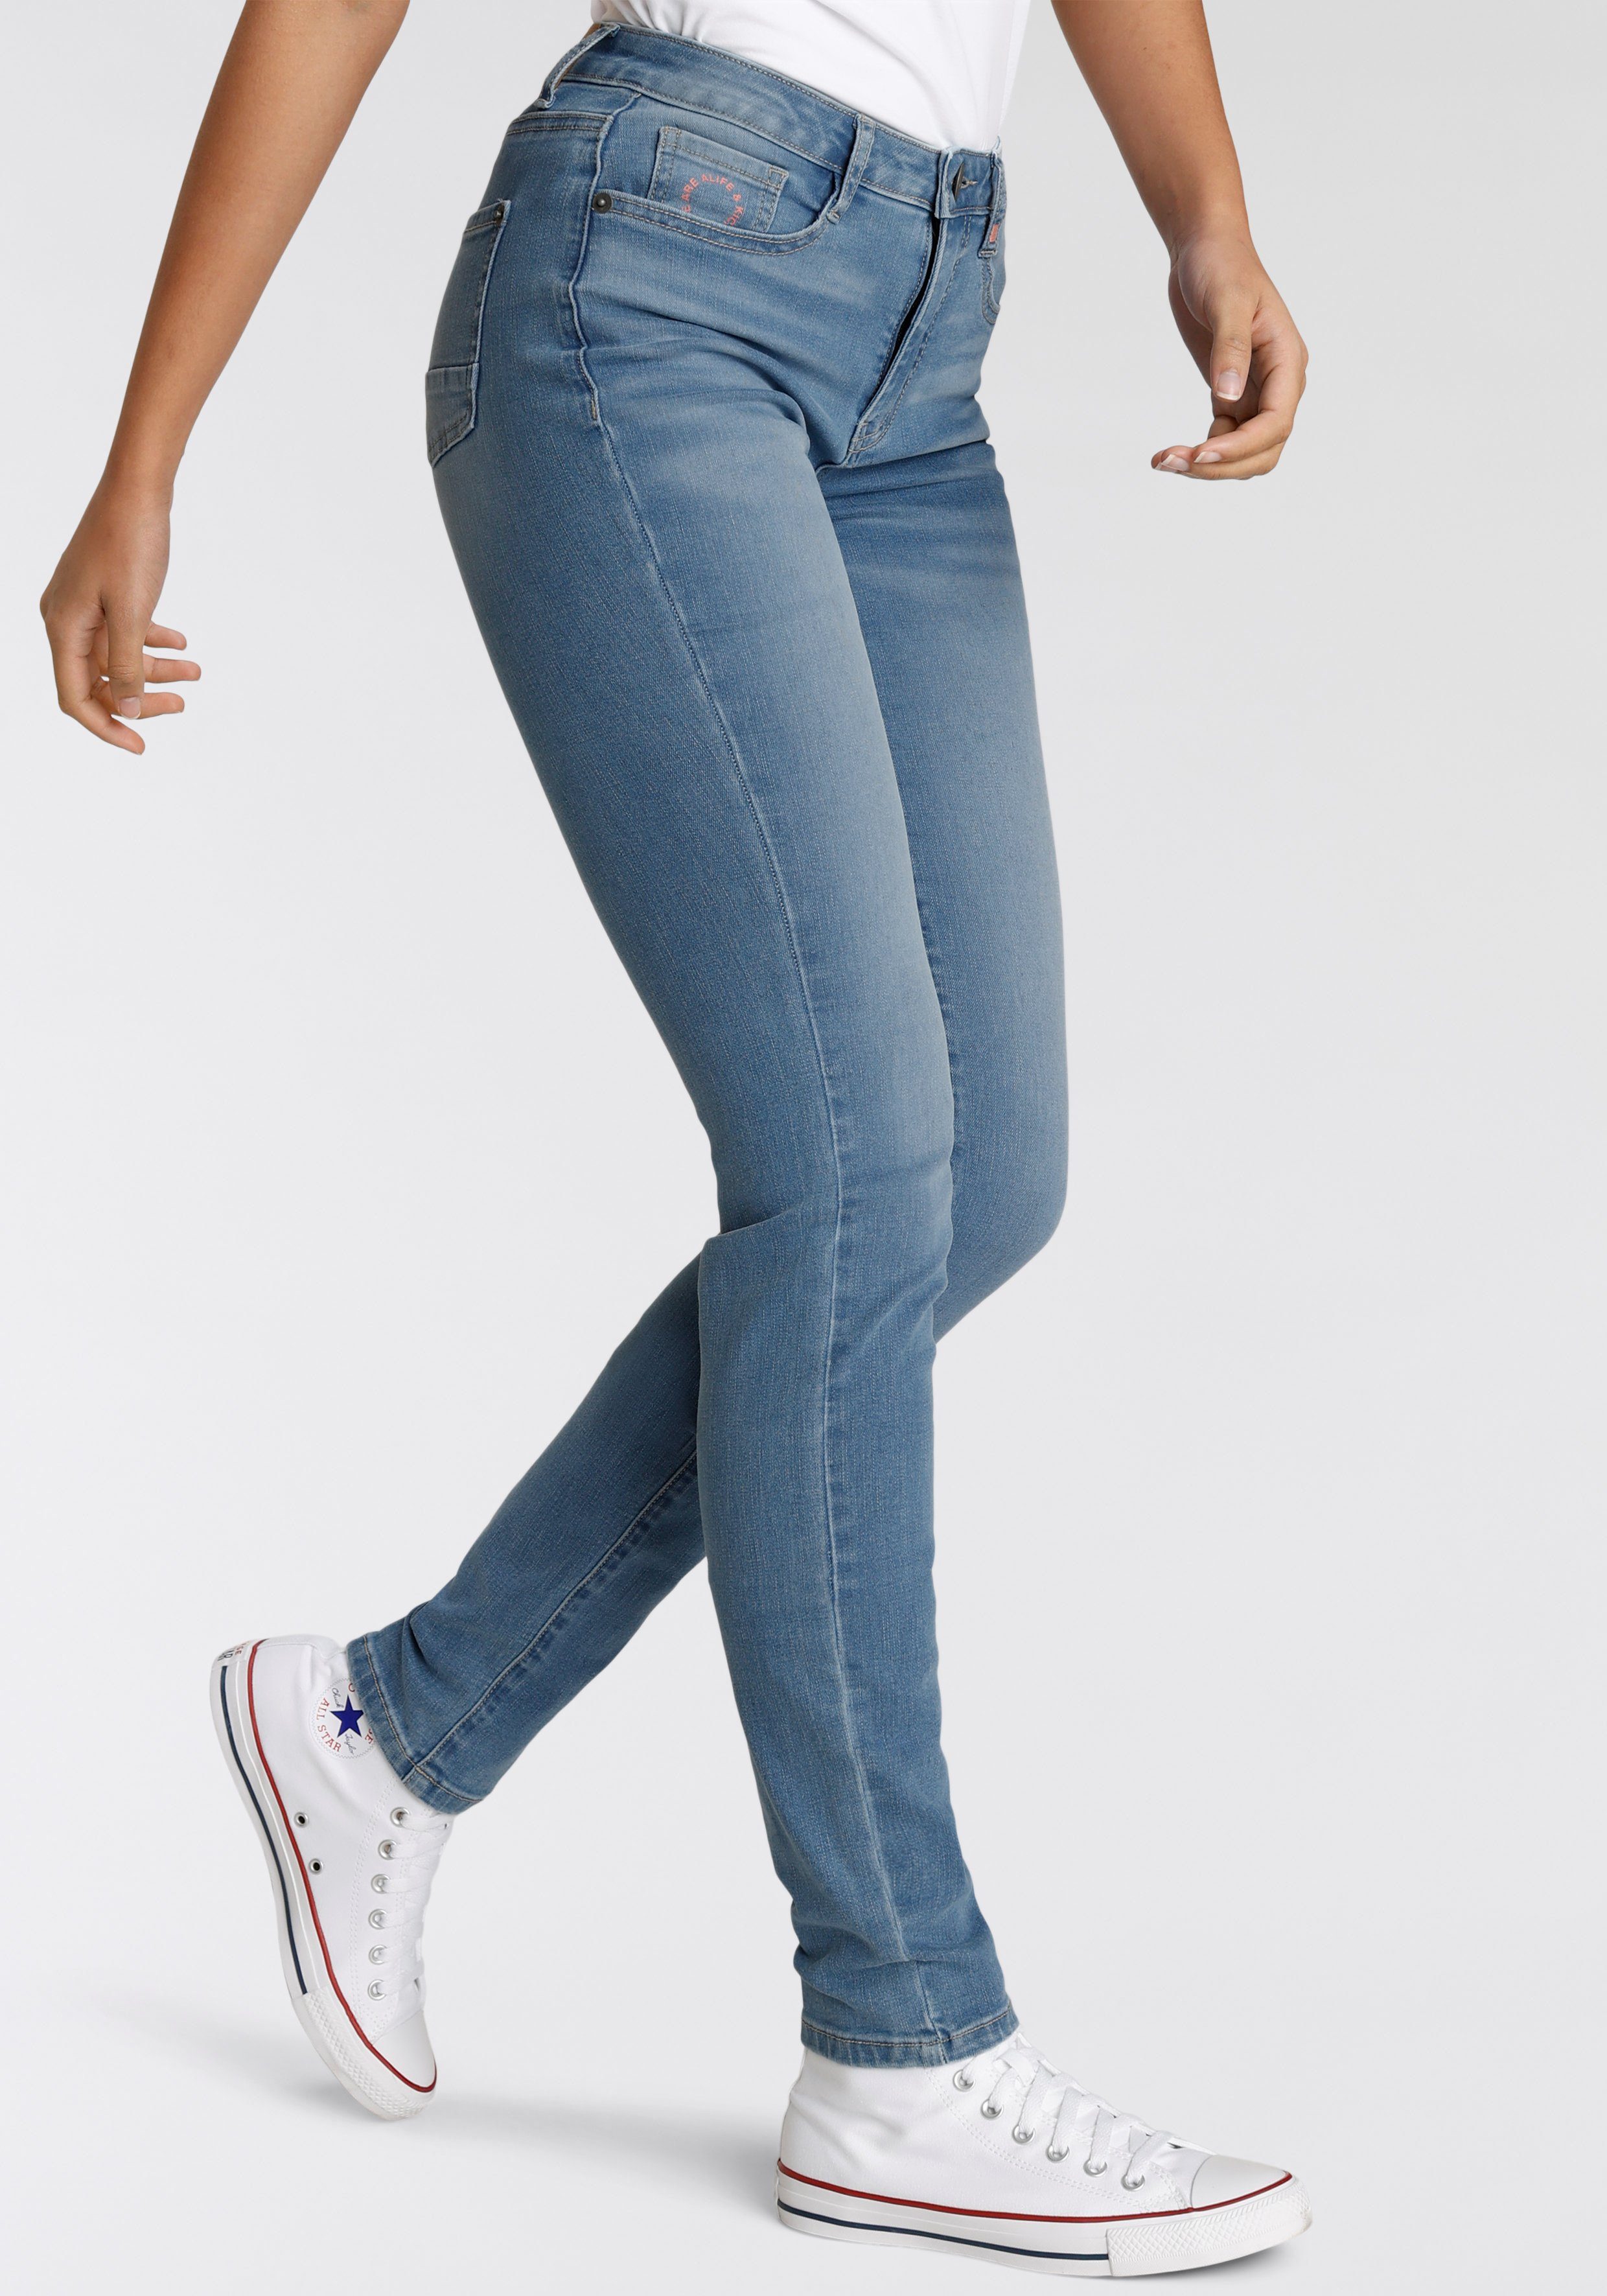 KOLLEKTION NolaAK blue & Kickin used NEUE Alife High-waist-Jeans Slim-Fit